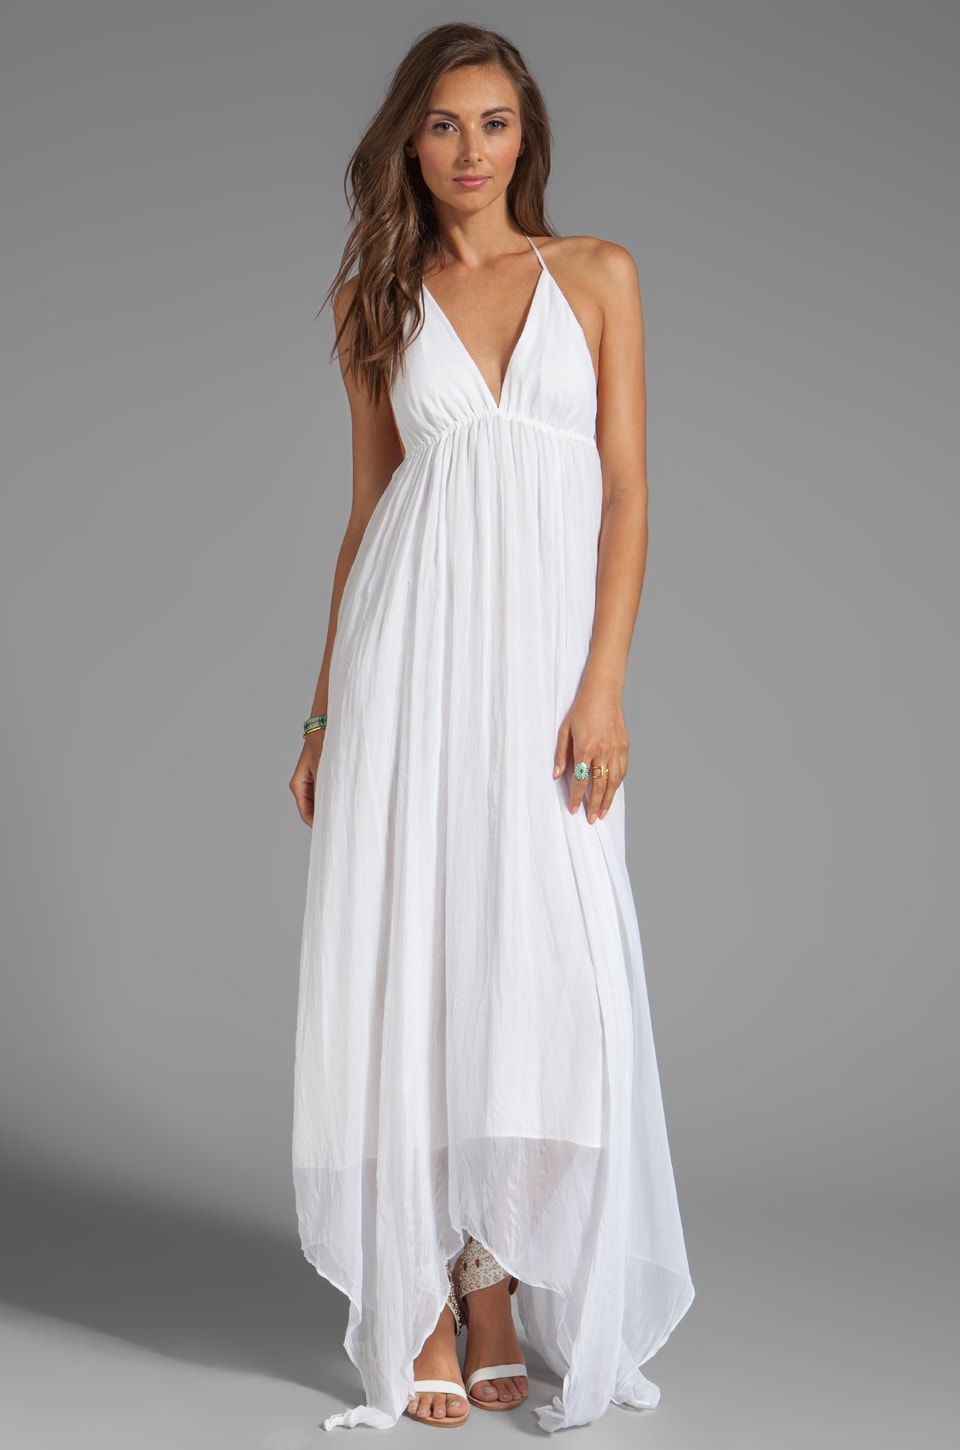 Alice + Olivia Bade Triangle Top Halter Dress in White | REVOLVE